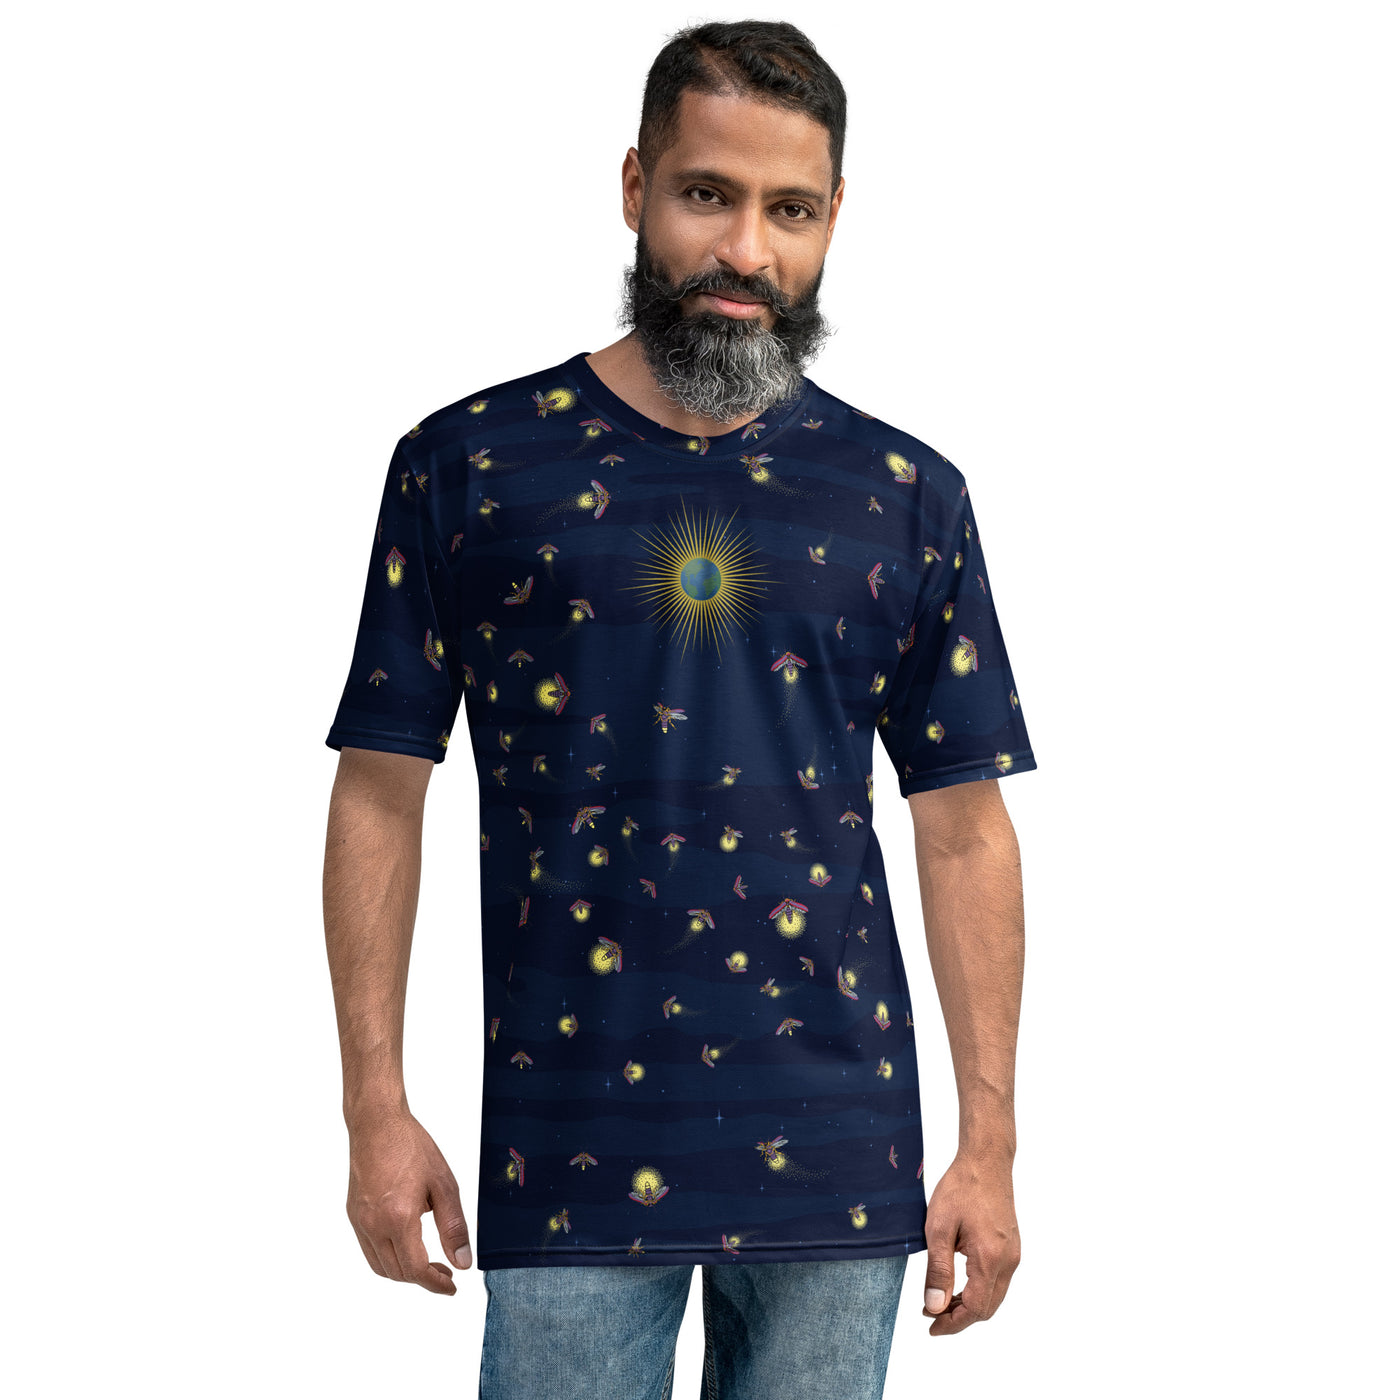 Fireflies- T-shirt